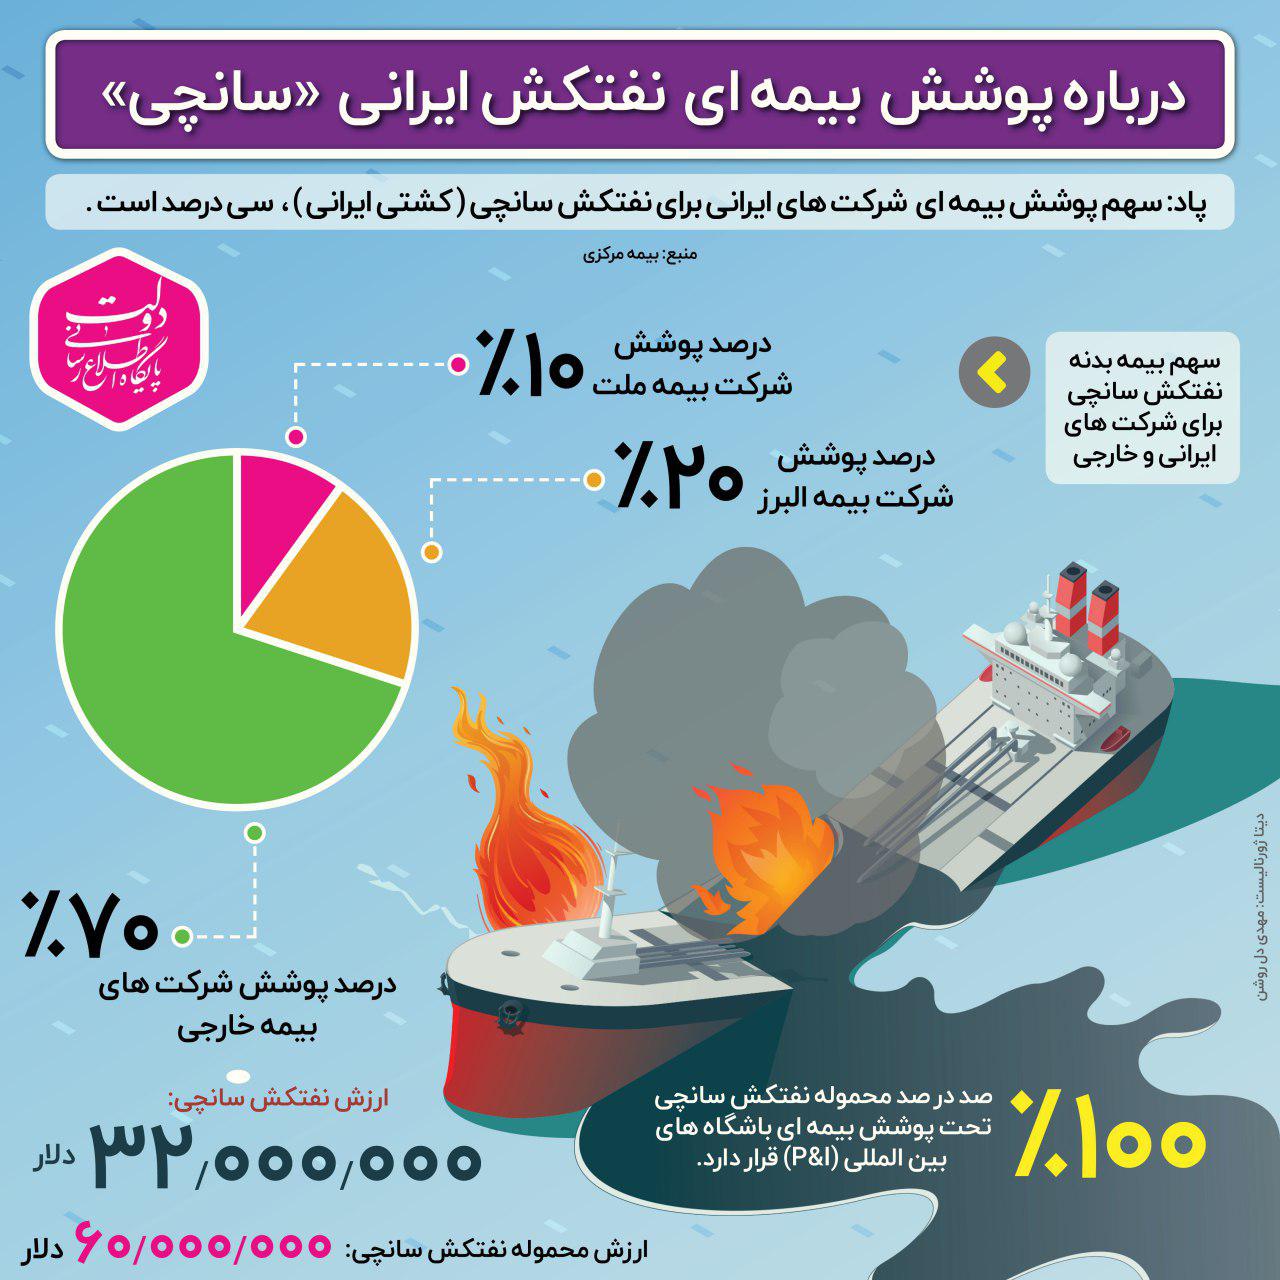 سهم پوشش بیمه‌ای شرکت‌های ایرانی برای نفتکش سانچی (کشتی ایرانی) 30 درصد است.